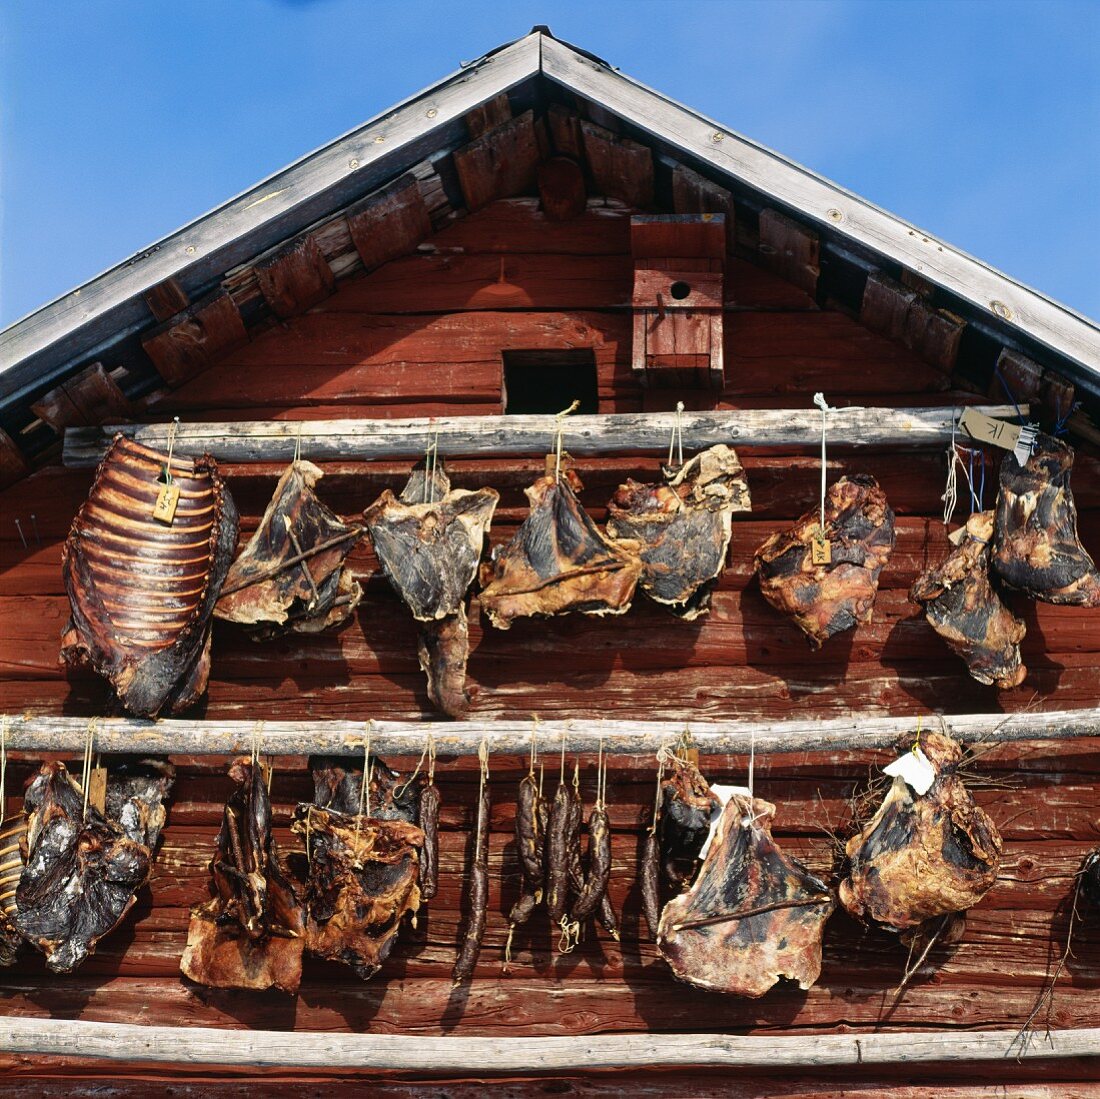 Aufgehängtes Rentierfleisch trocknet an der Aussenwand eines Holzhauses